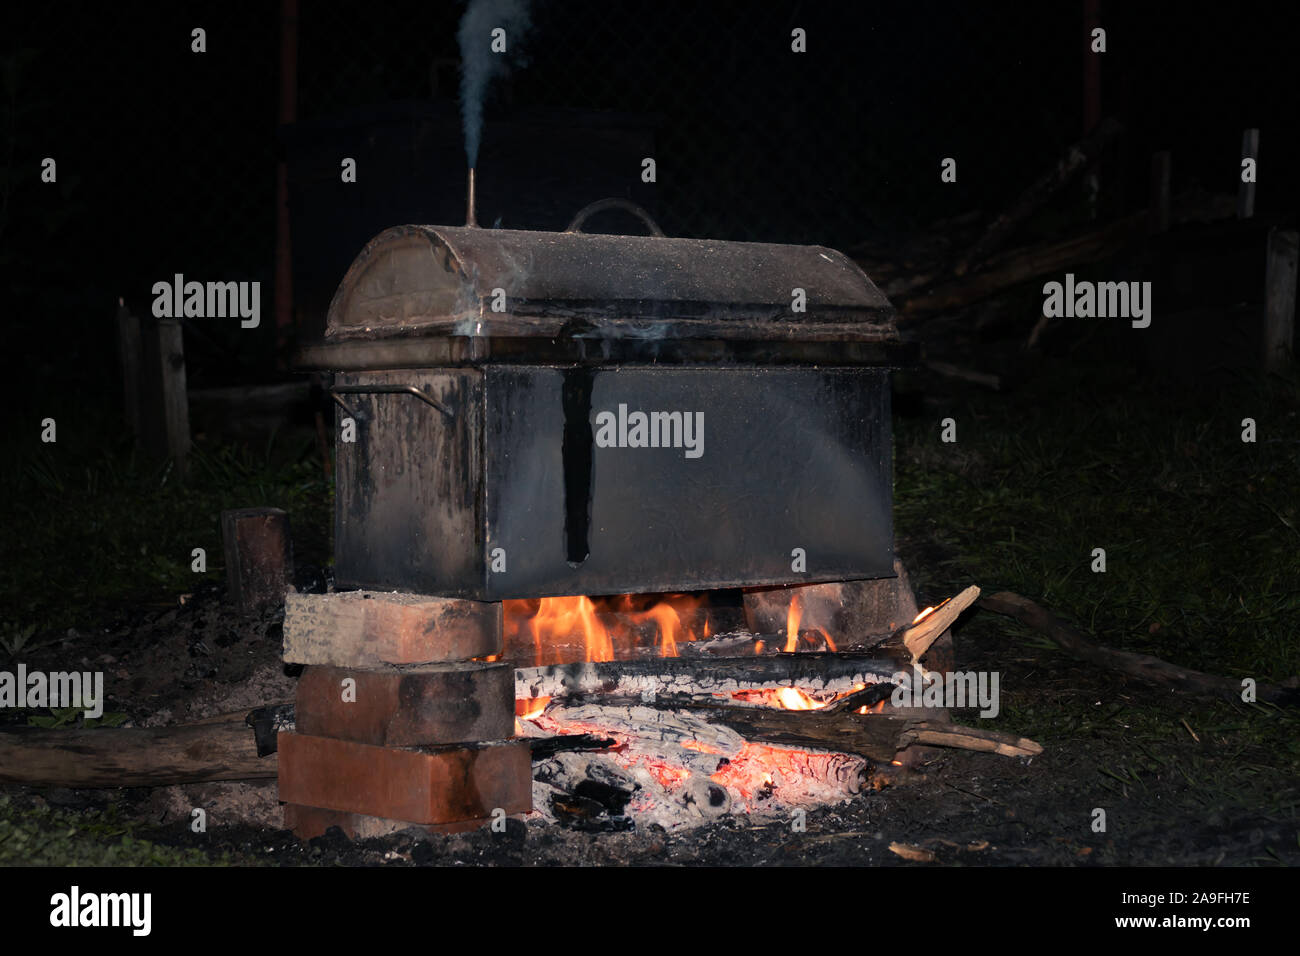 La cuisson des viandes fumées dans un fumoir métalliques mobiles sur le bûcher Banque D'Images